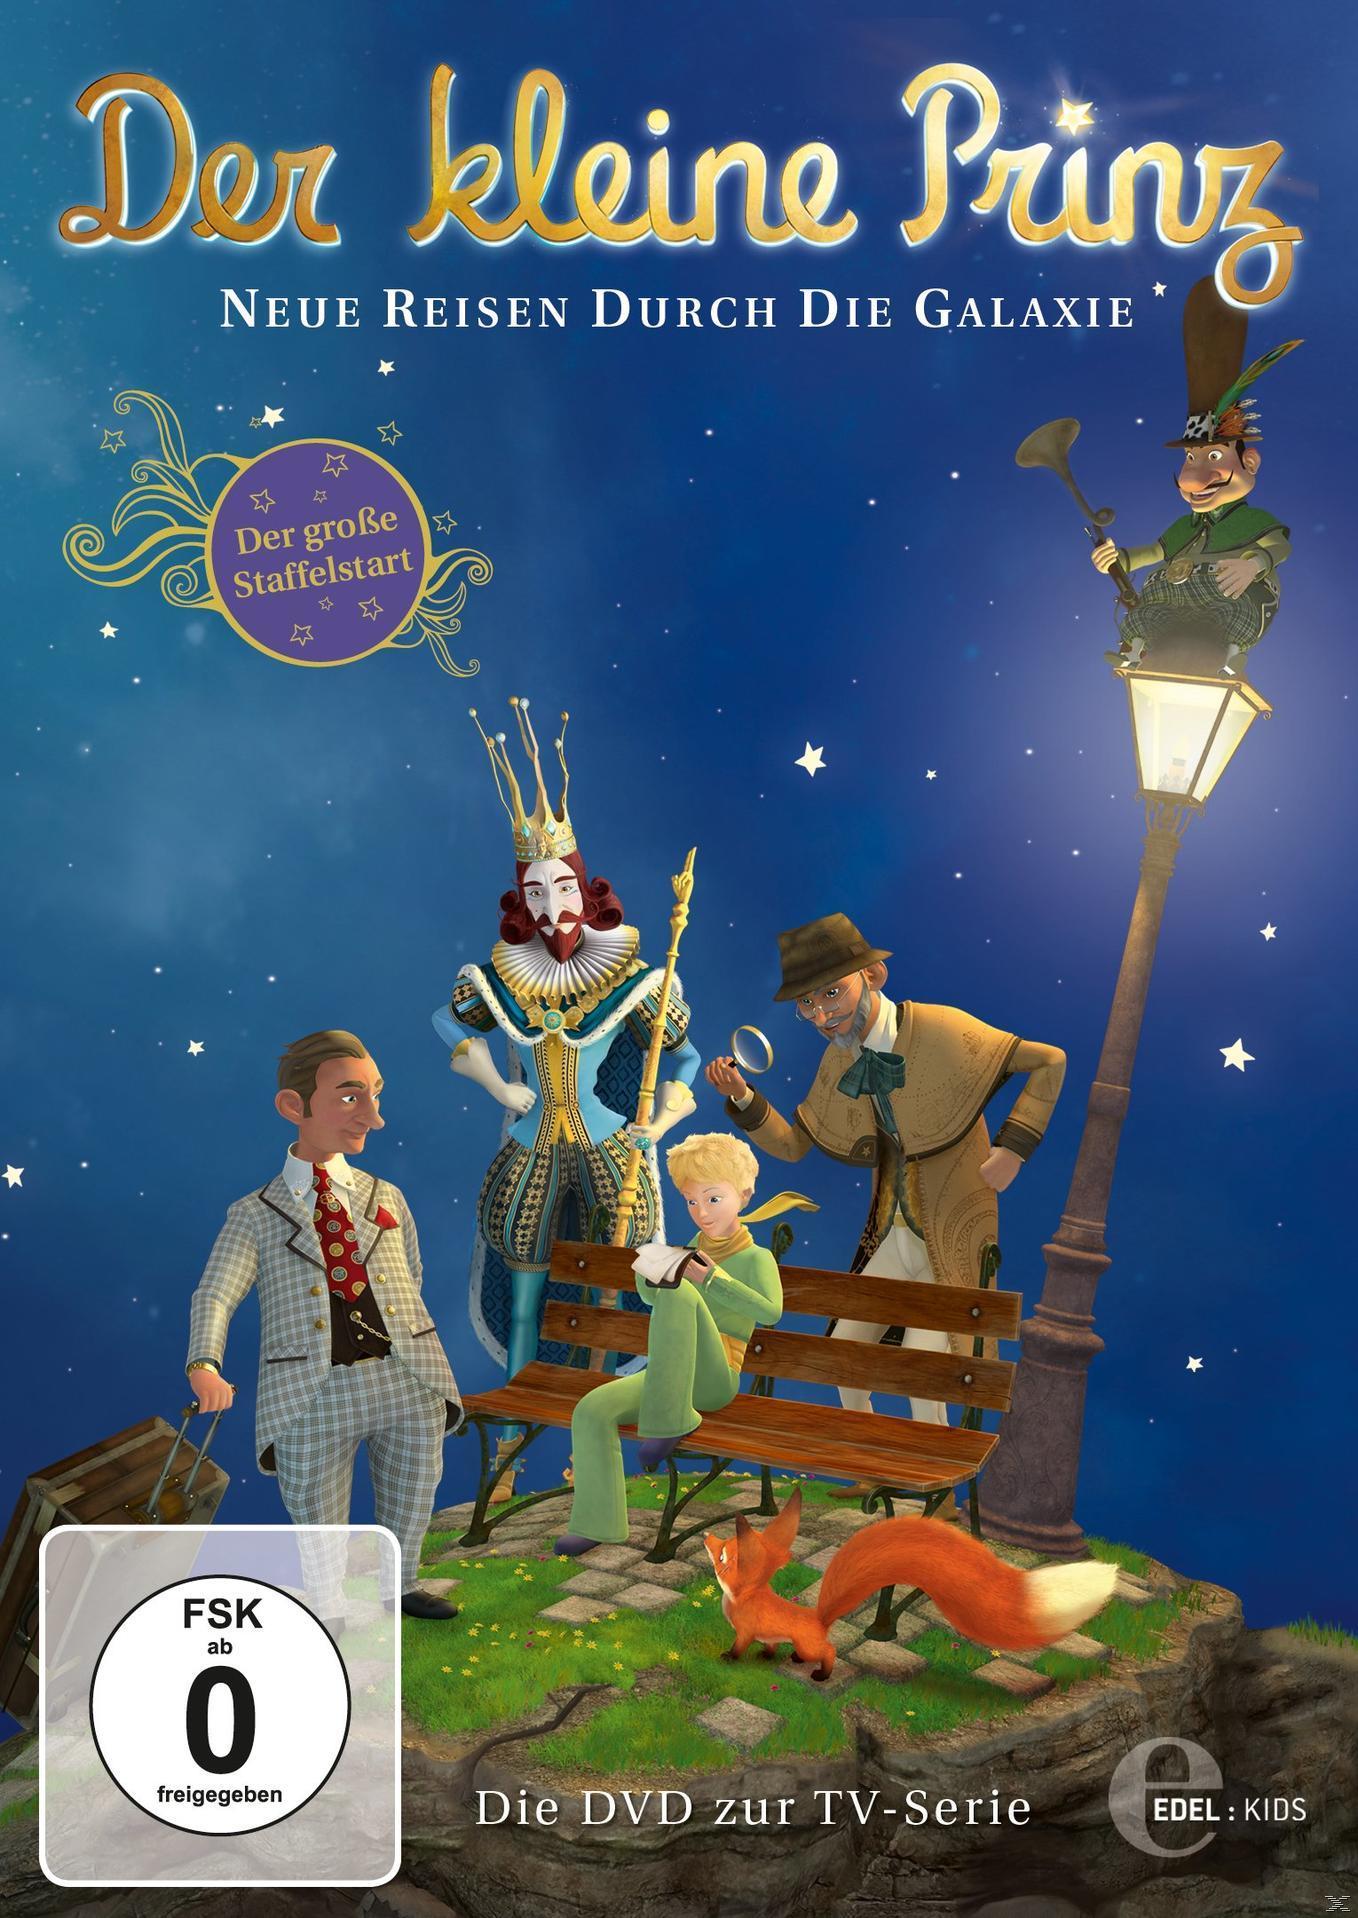 Der Kleine Prinz DVD DVD Die (23) Galaxie - Durch Reisen TV-Neue